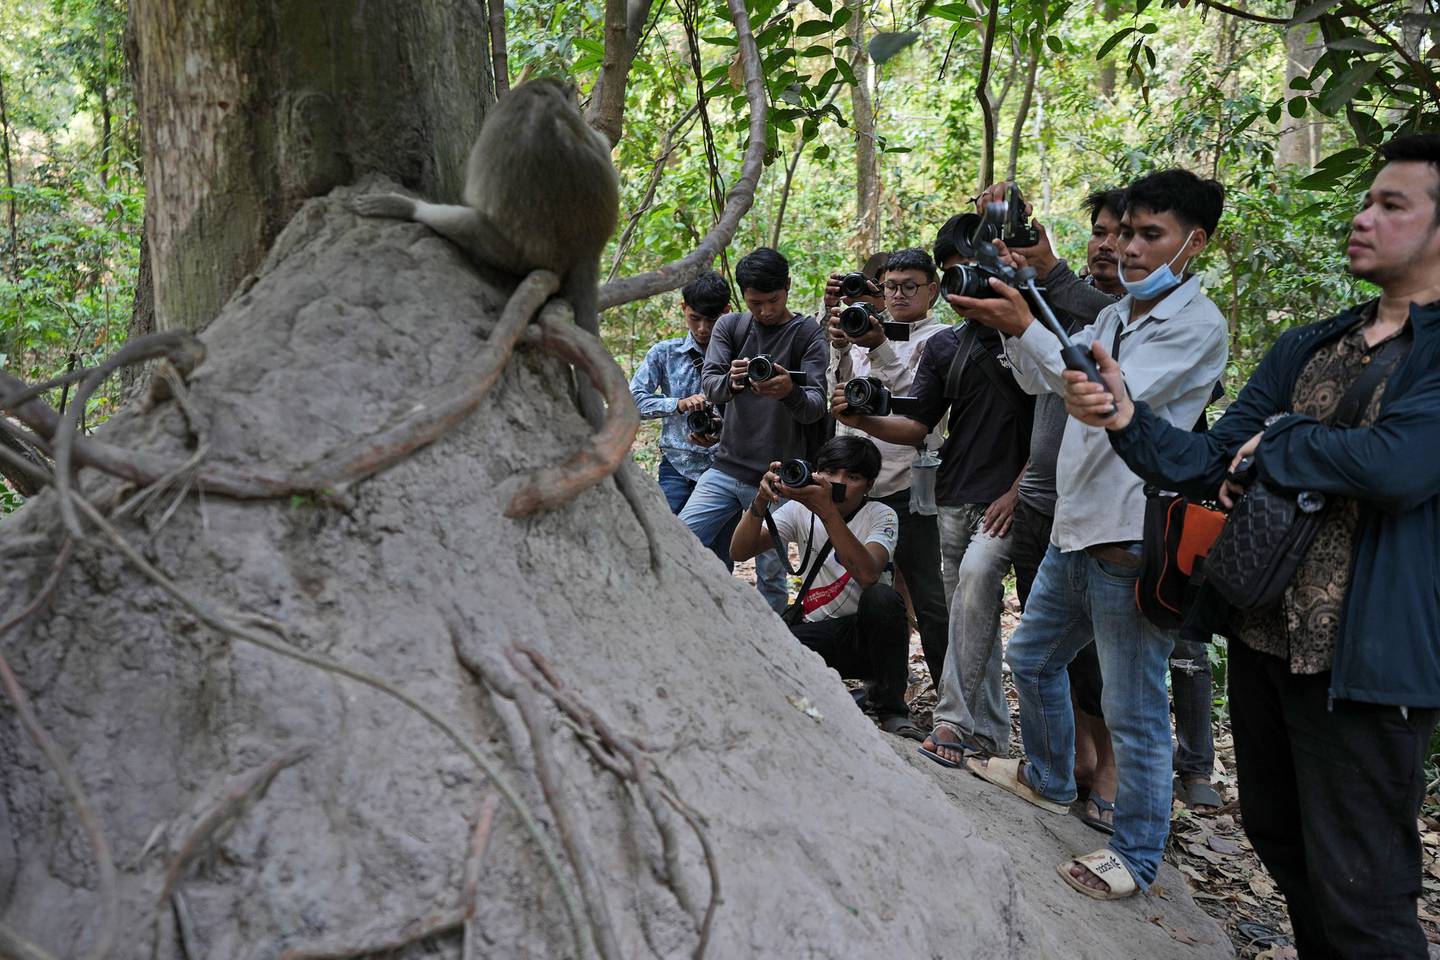 Turister samler seg rundt en ape i ruinbyen Angkor. Apenes naturlige livsførsel blir kraftig forstyrret. Kambodsjanske myndigheter opplyser også at noen av turistene direkte mishandler apene for å legge ut filmsnutter av det på internett.